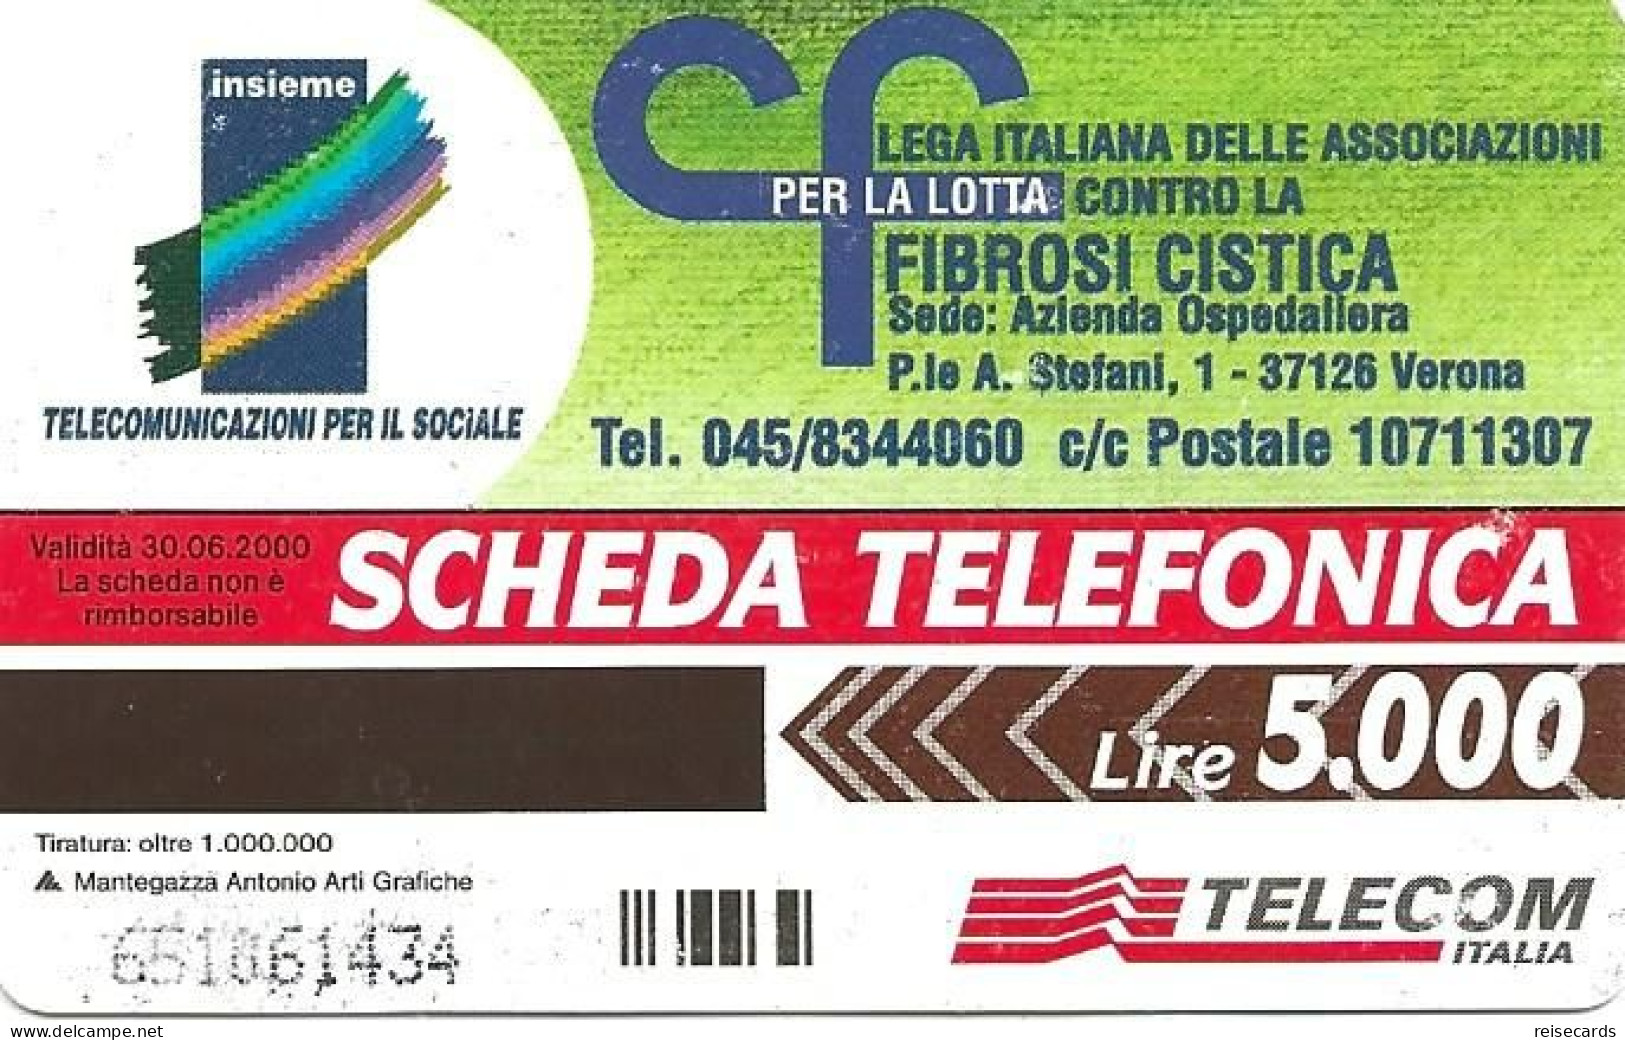 Italy: Telecom Italia - Fibrosi Cistica - Publiques Publicitaires